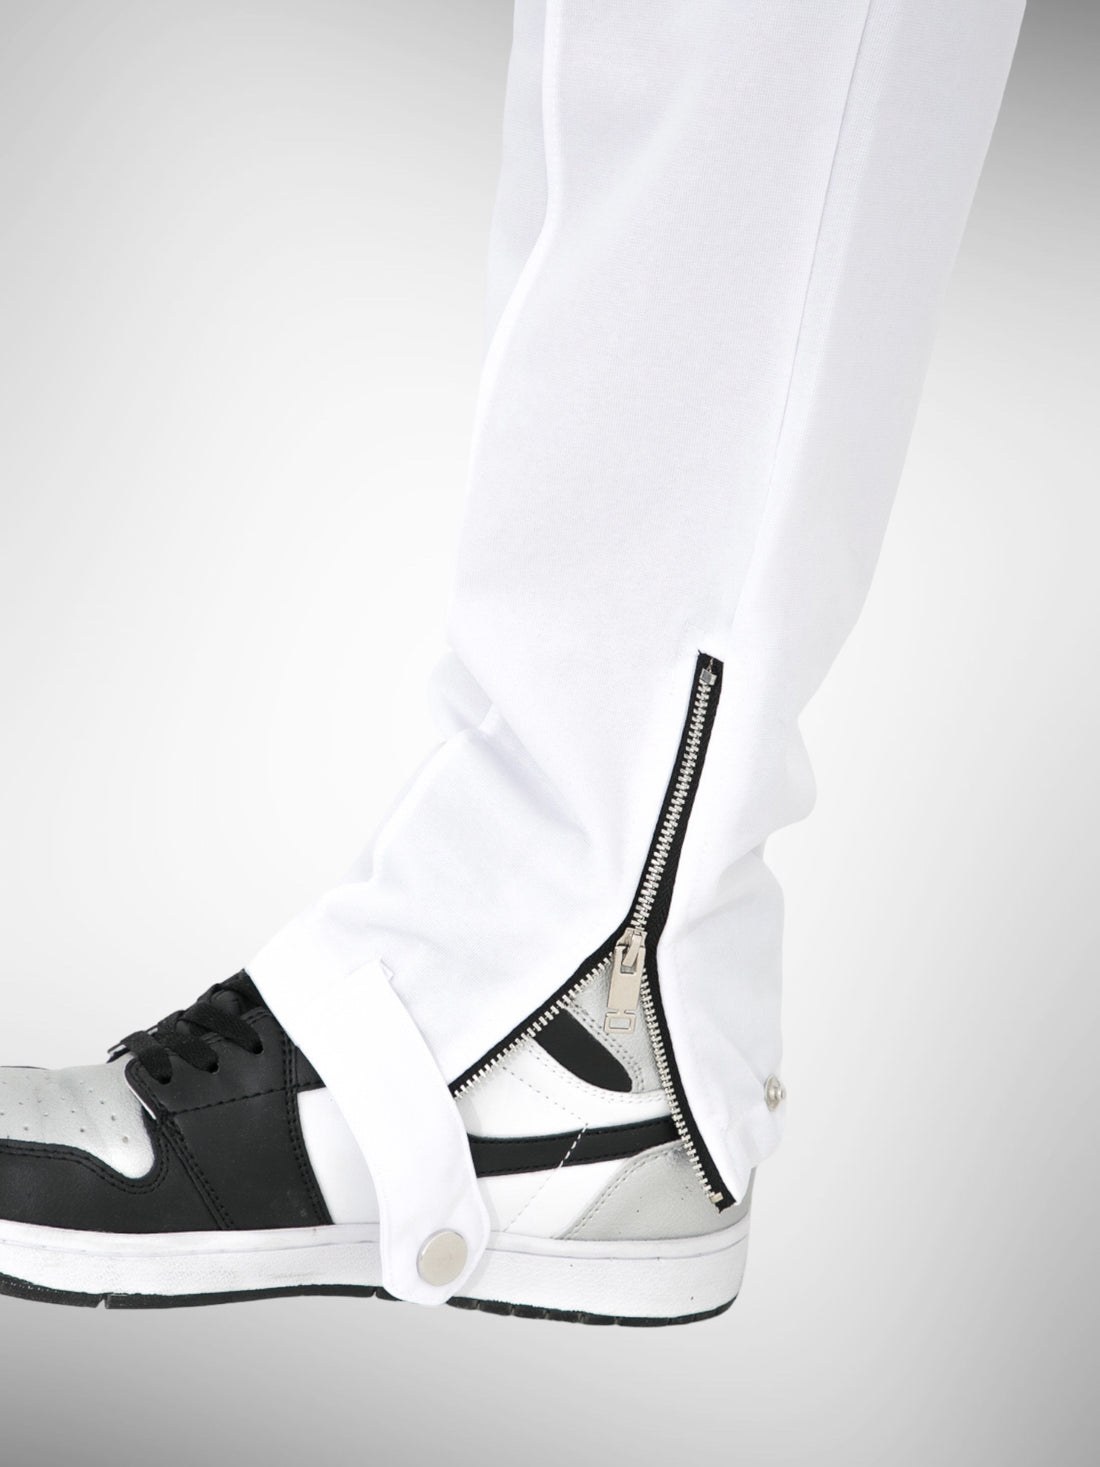 Pantalon Zip Miami blanc bande noir - Stayin